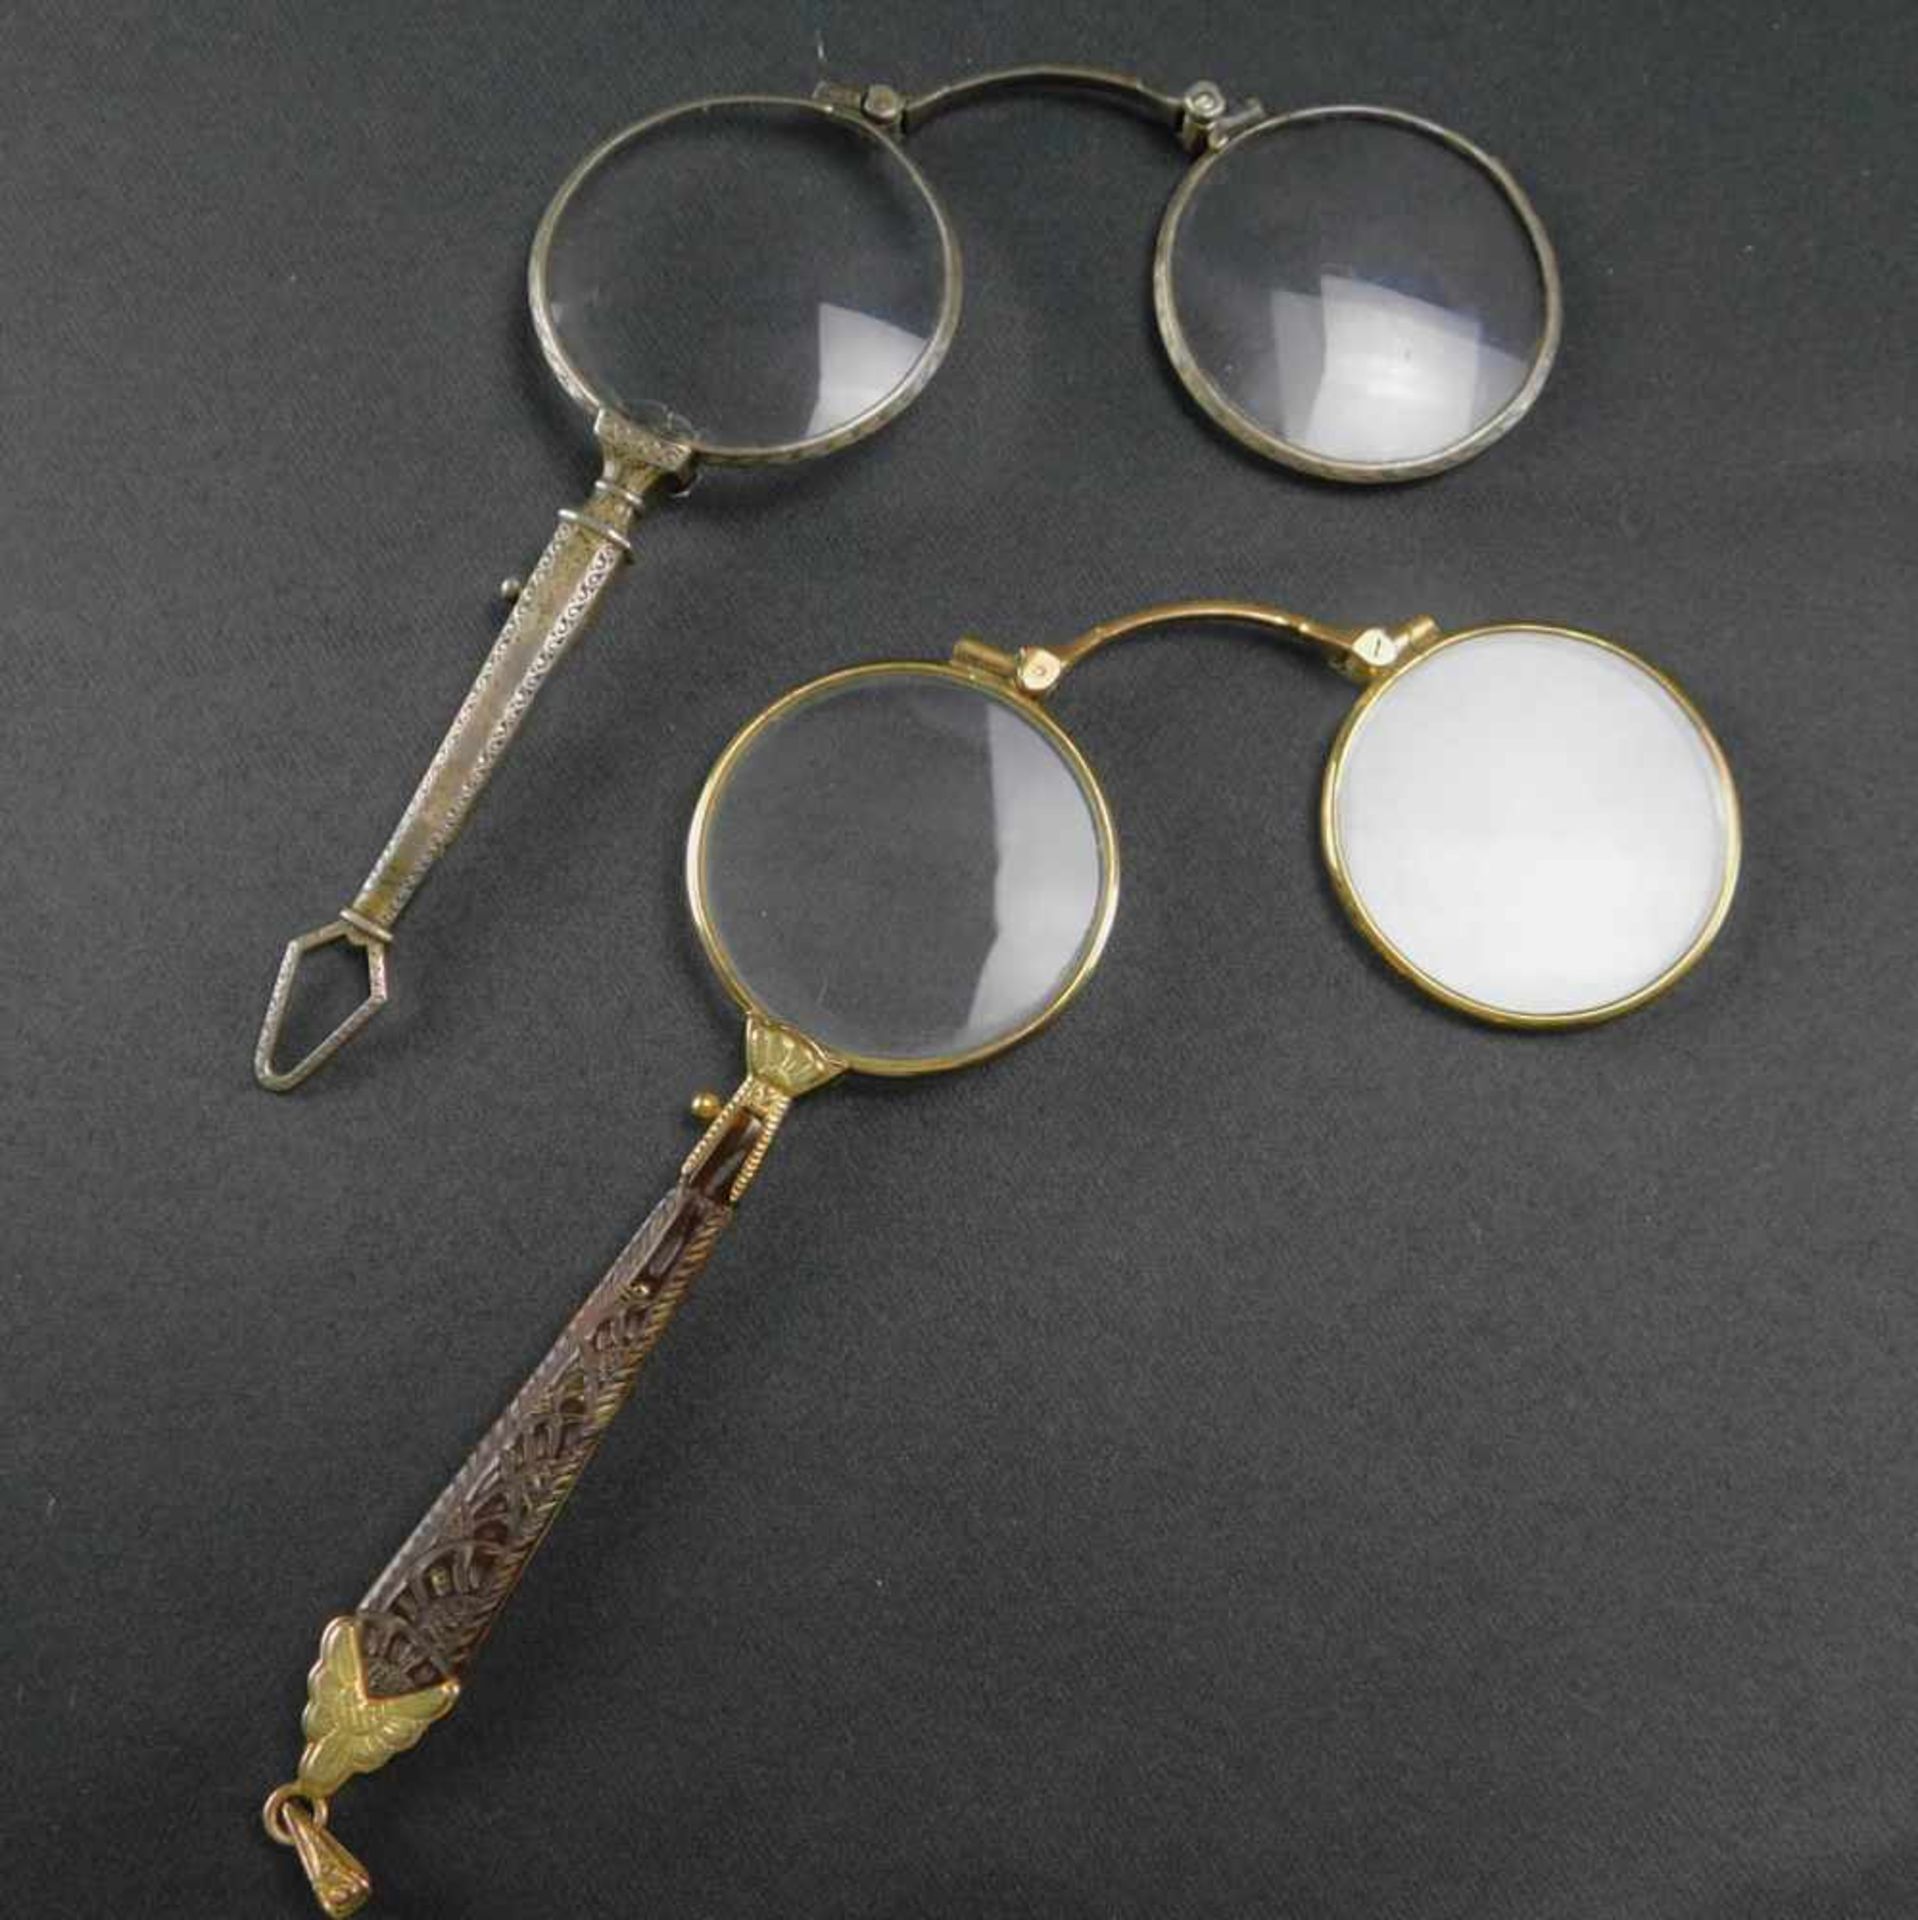 2 Longnons, aufklappbare Brillen, Anfang 20. Jhdt., Länge 11 bis 12 cmSilberfarbene Longnon: Glas am